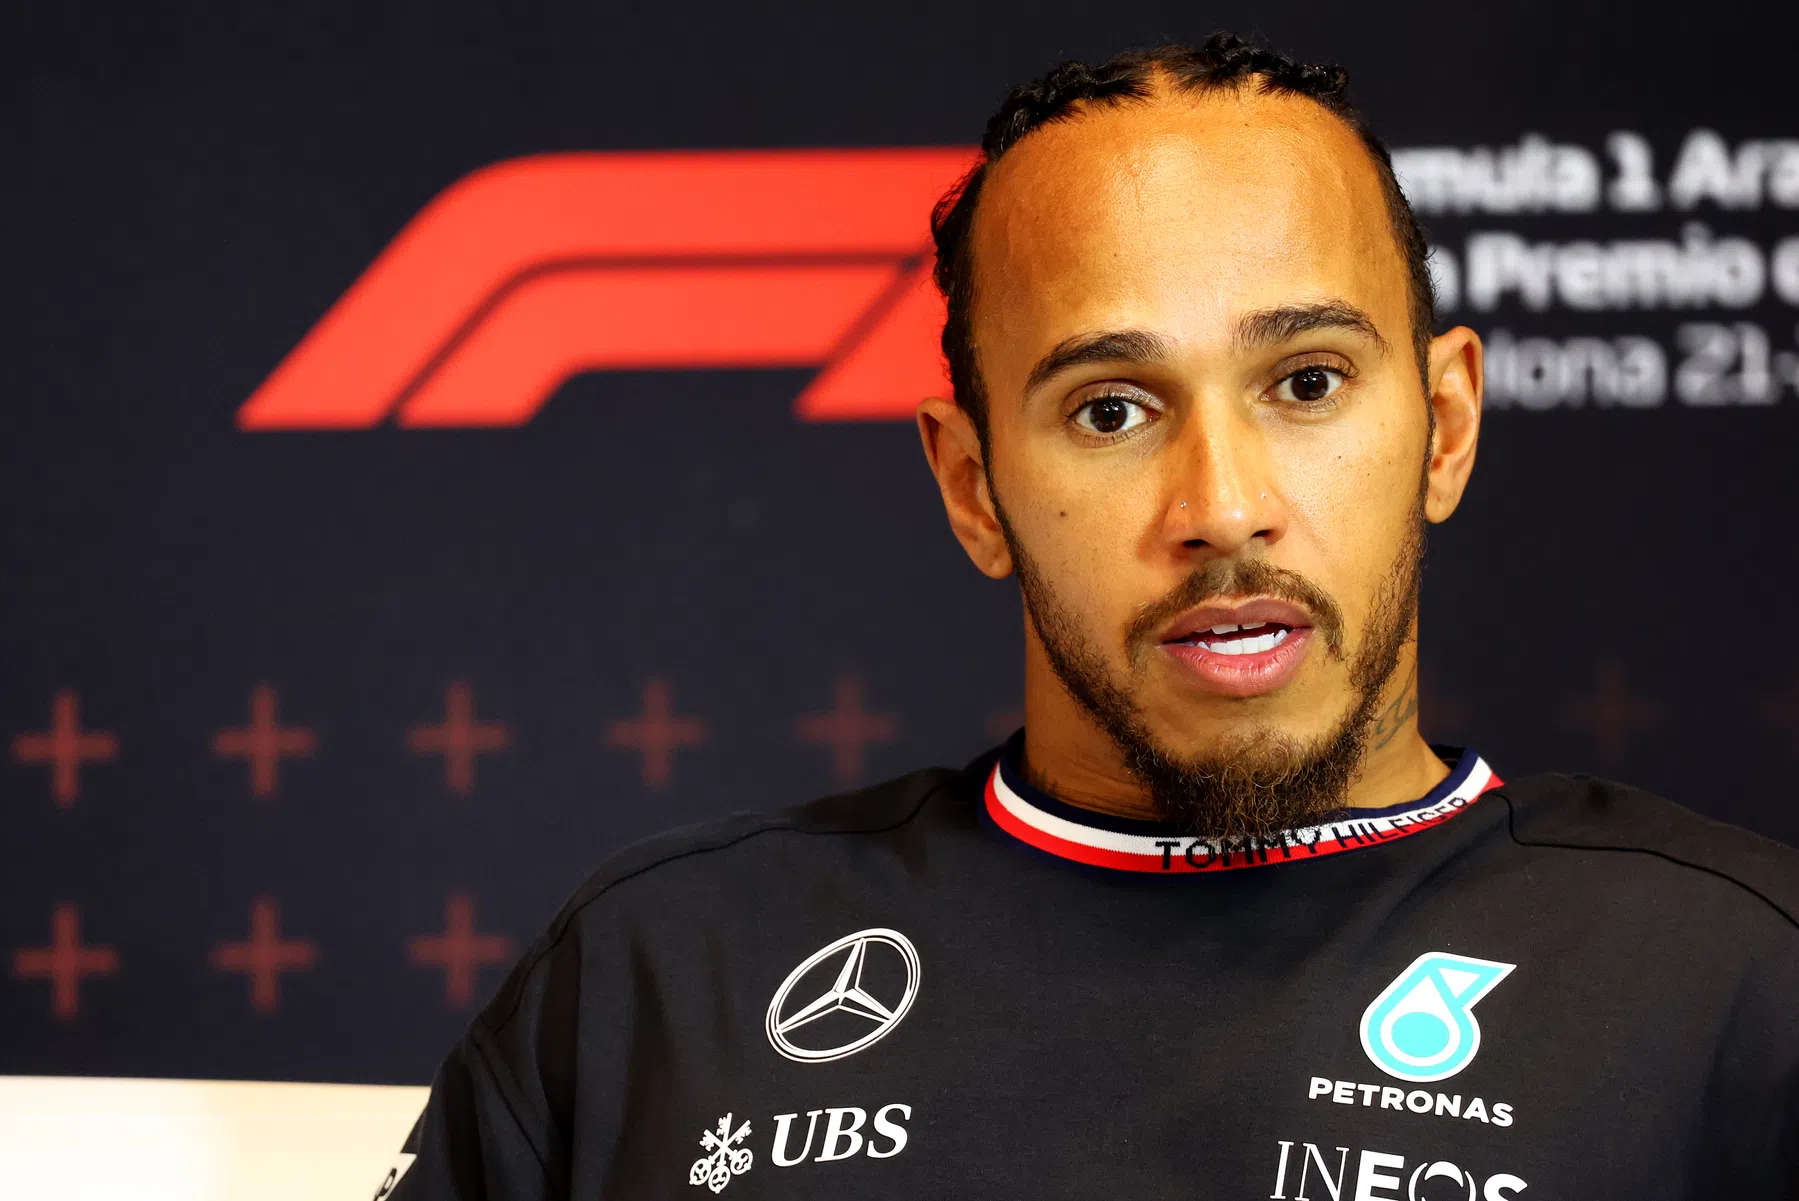 Comissários de bordo anunciam o veredicto sobre Lewis Hamilton e Mercedes após incidente no terceiro trimestre